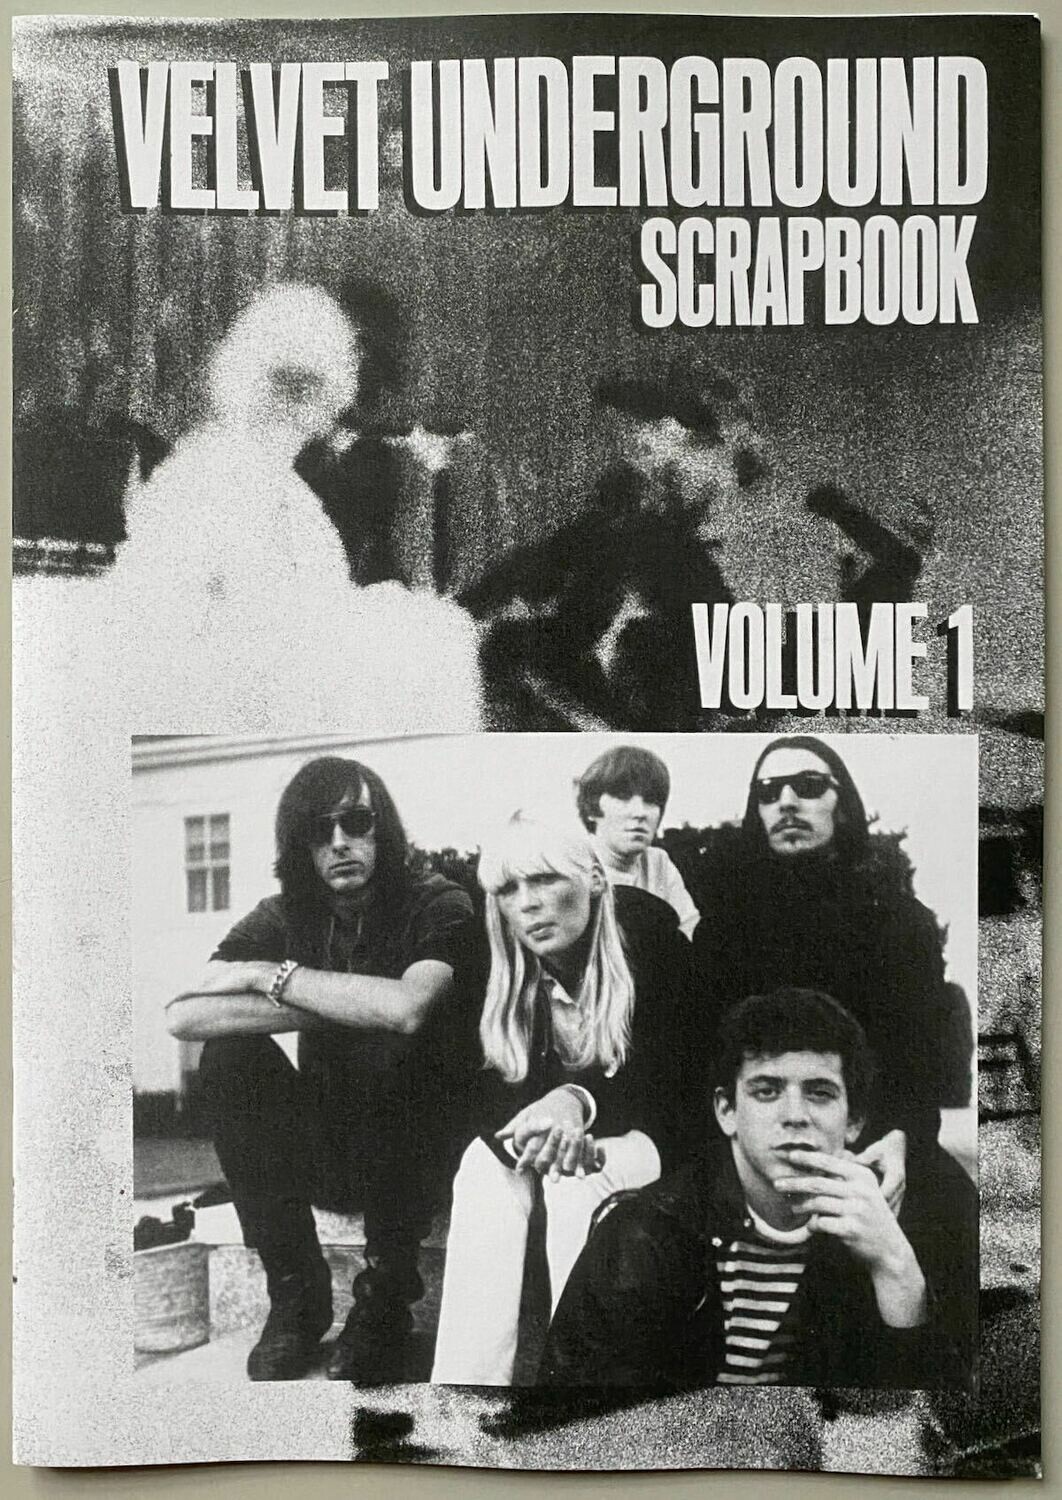 Velvet Underground Scrapbook Vol.1